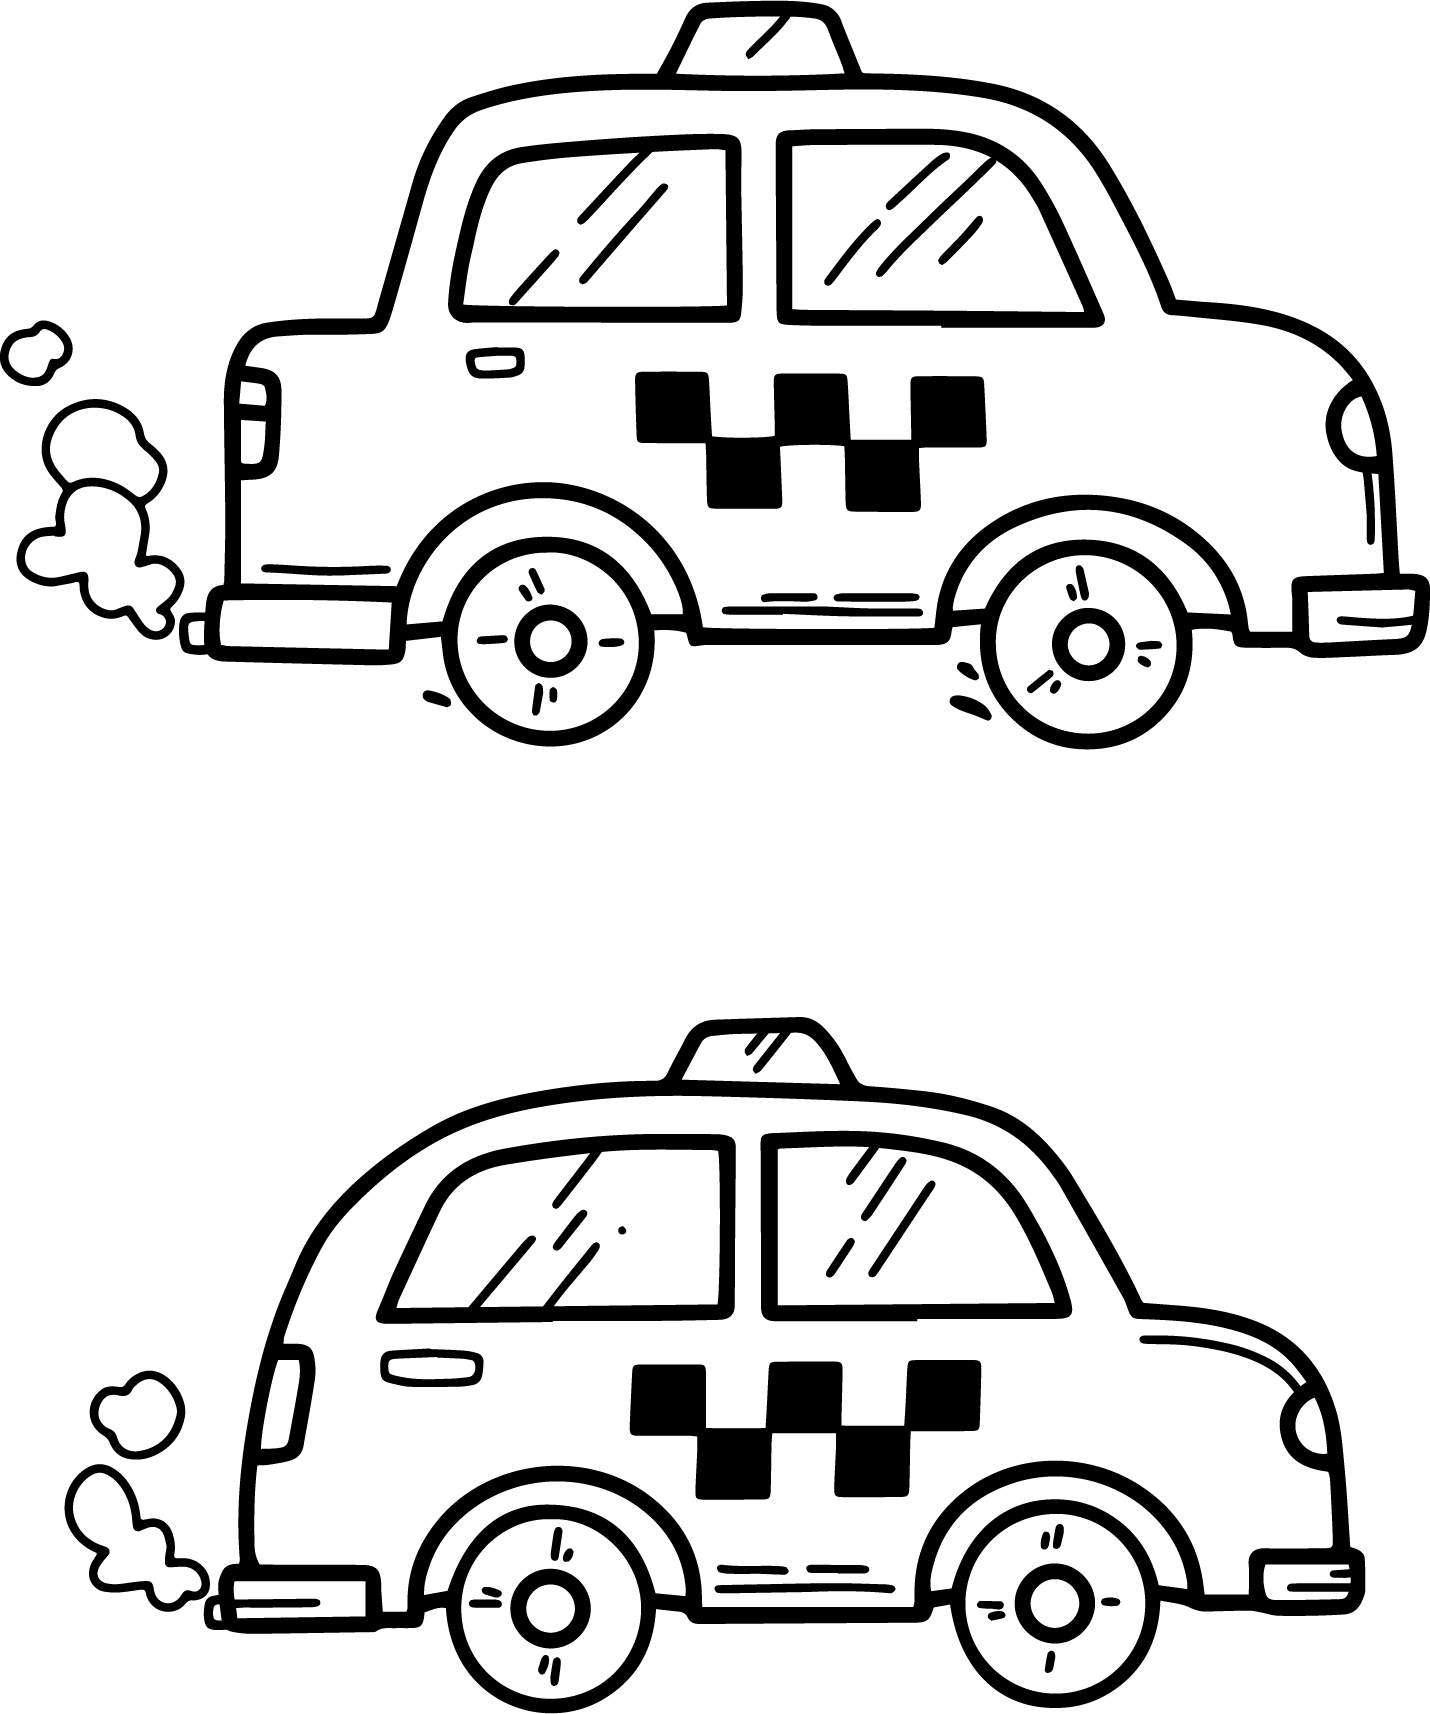 Раскраска две маленькие машинки такси формата А4 в высоком качестве